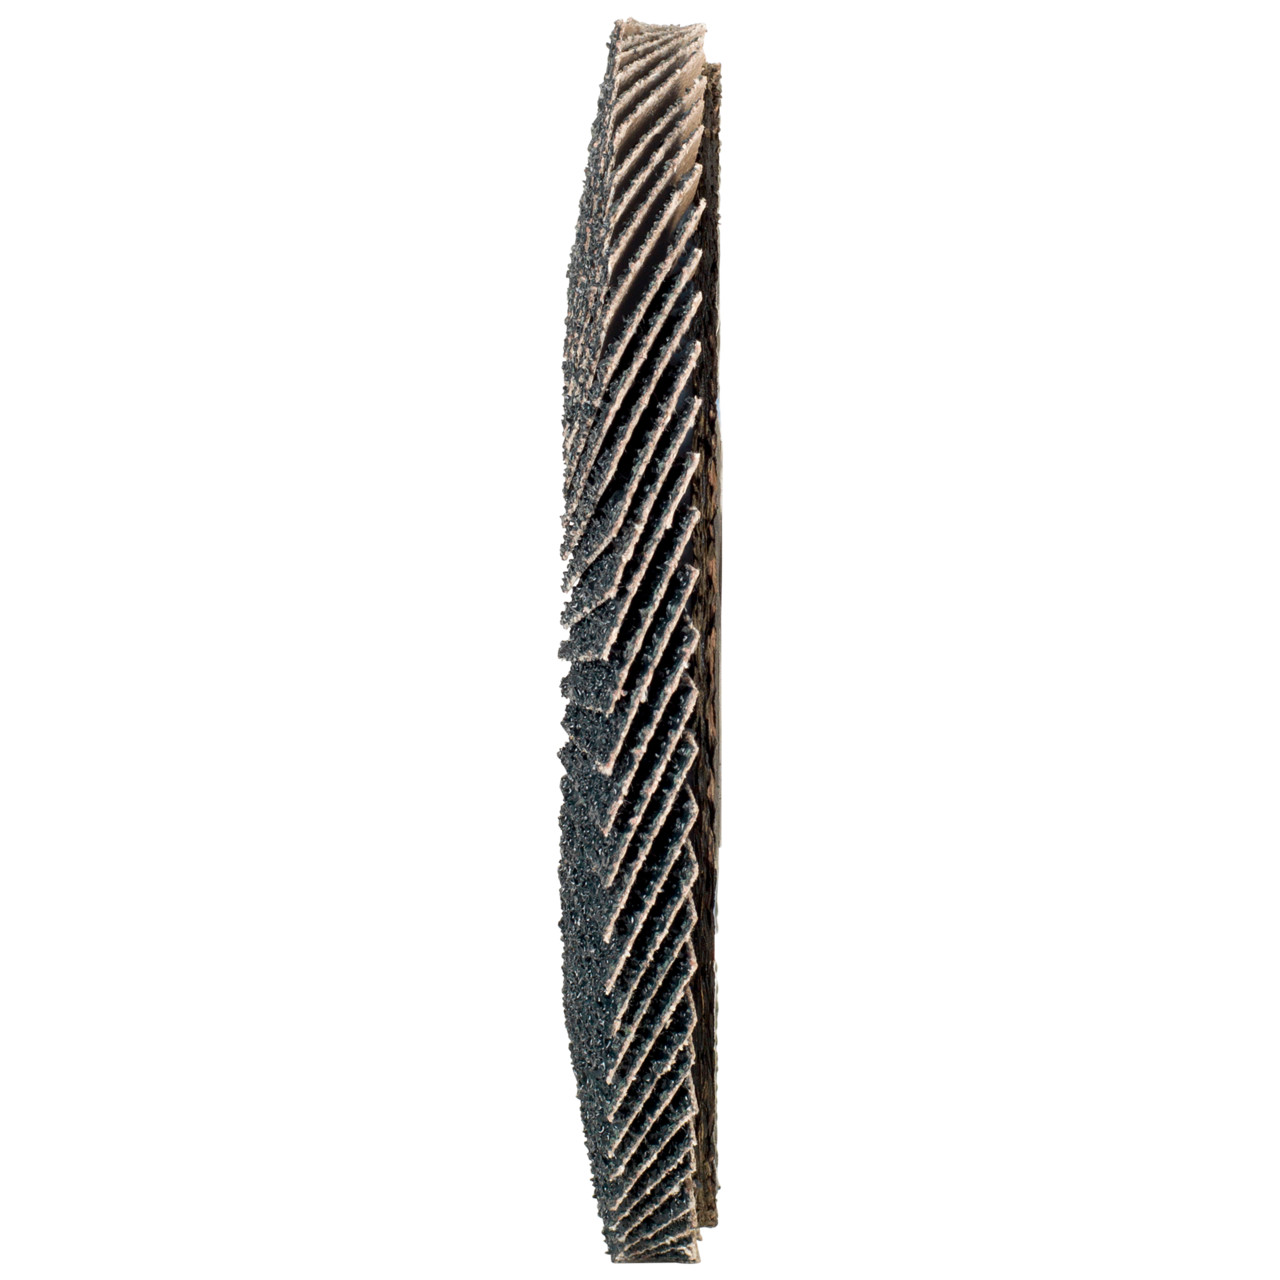 TYROLIT Fächerscheibe DxH 178x22,2 2in1 für Stahl & Edelstahl, P40, Form: 28A - gerade Ausführung (Glasfaserträgerkörperausführung), Art. 668696